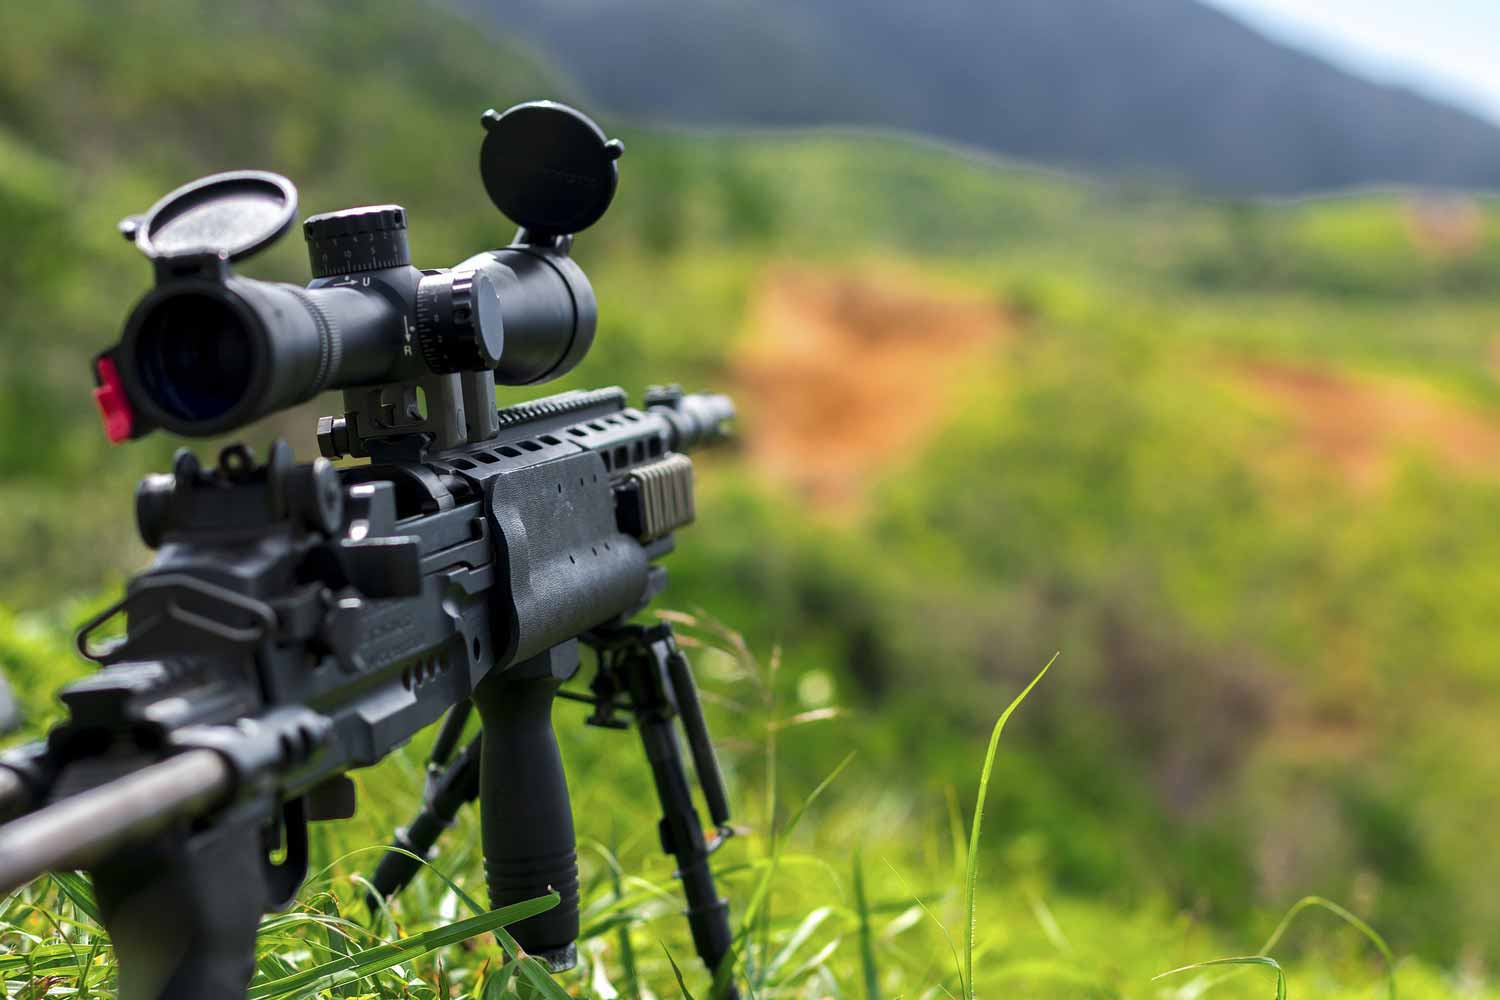 Sniper  Bolt Action Spring Sniper Rifles